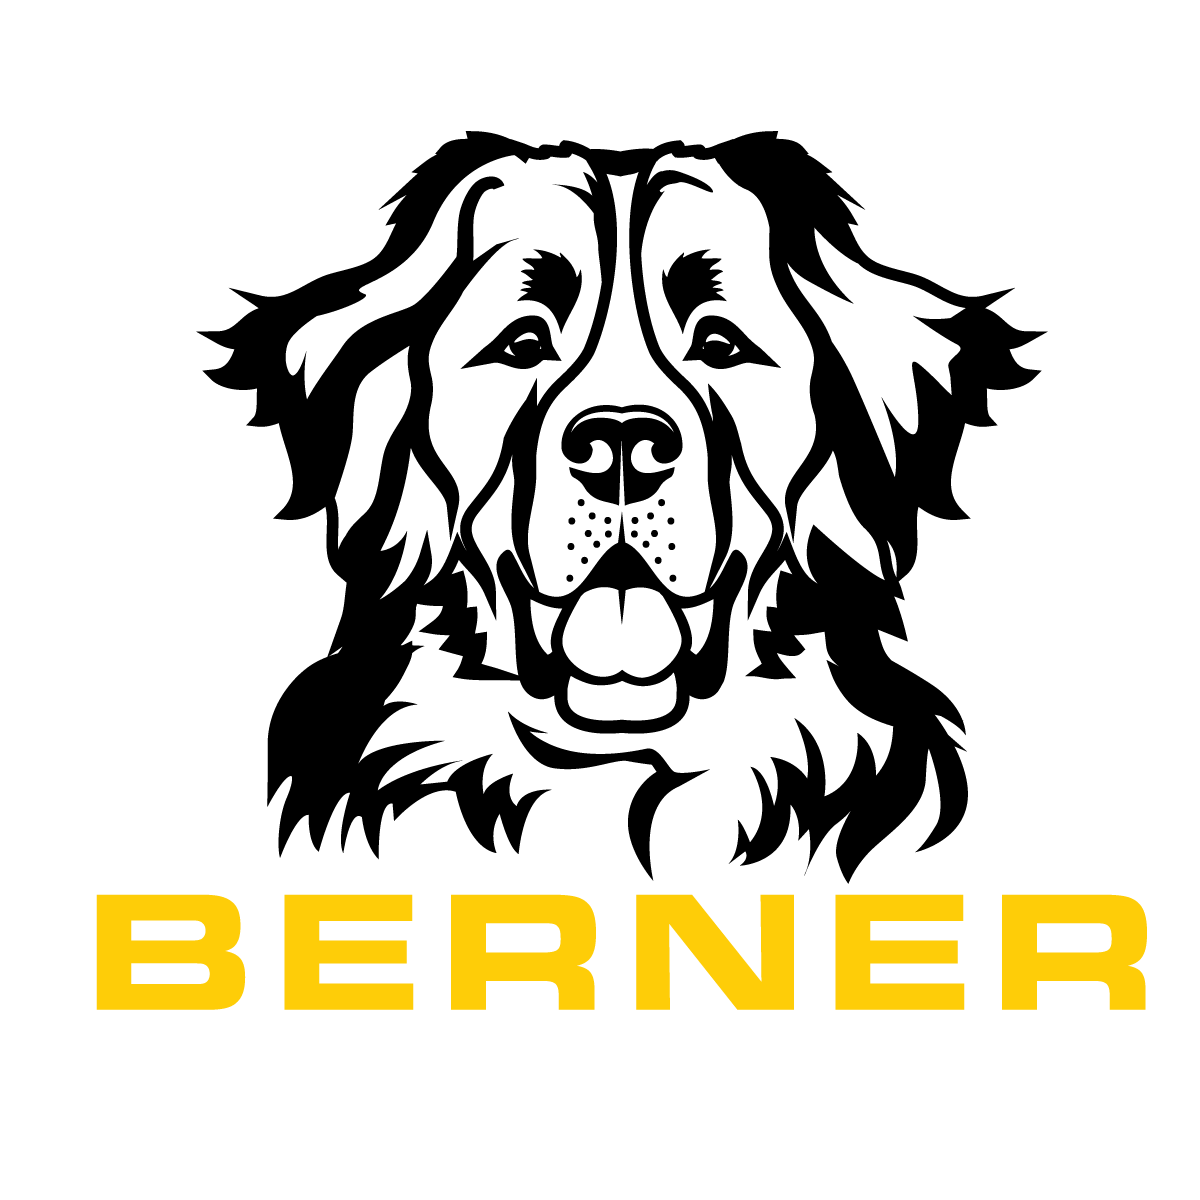 Berner Demolition and Junk Removal LTD's logo